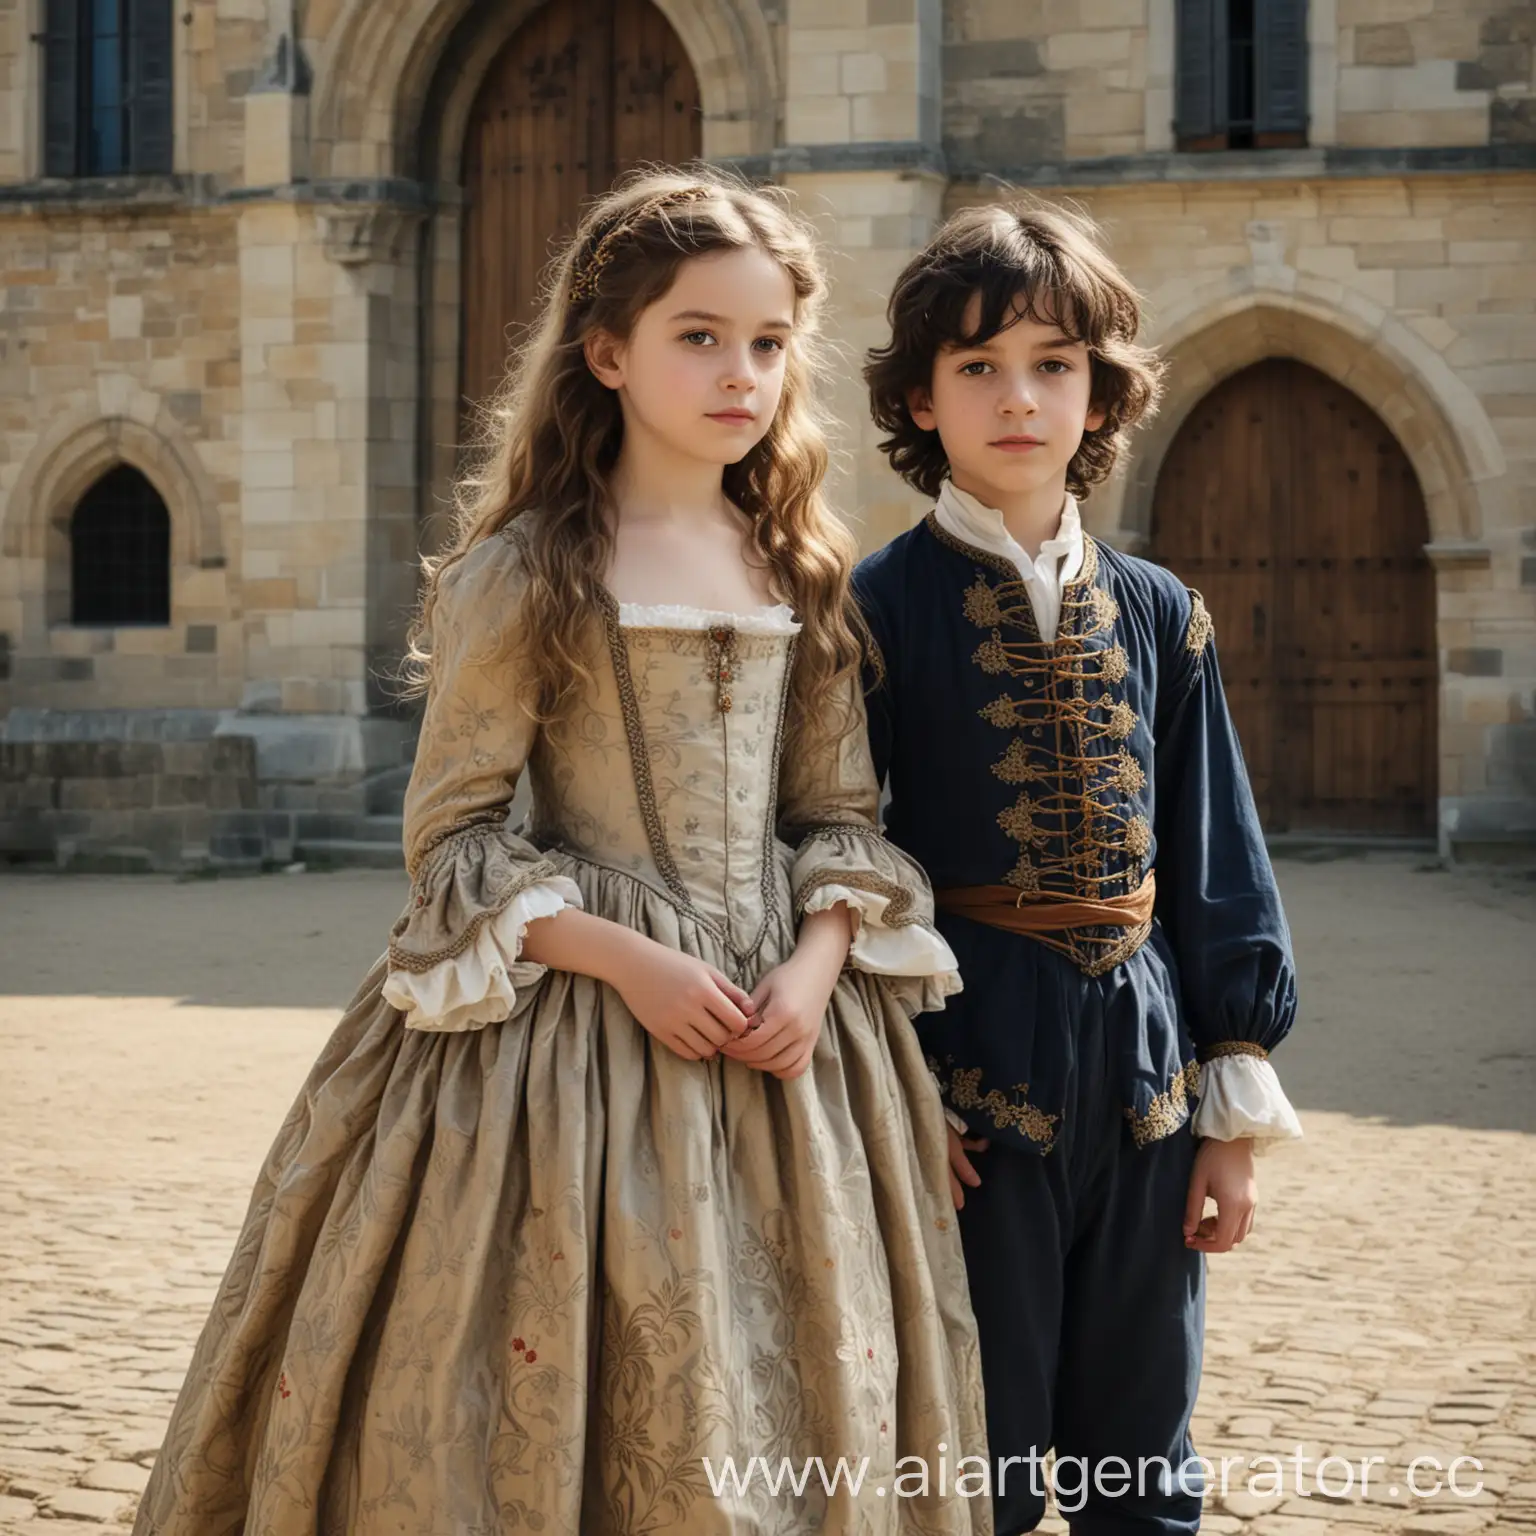 Молодая девушка со светлыми, длинными волнистыми волосами в платье 16 века Франции стоит рядом с молодым темноволосым парнем с волнистыми волосами в одежде 16 века Франции. Рядом с ними находится большой замок 